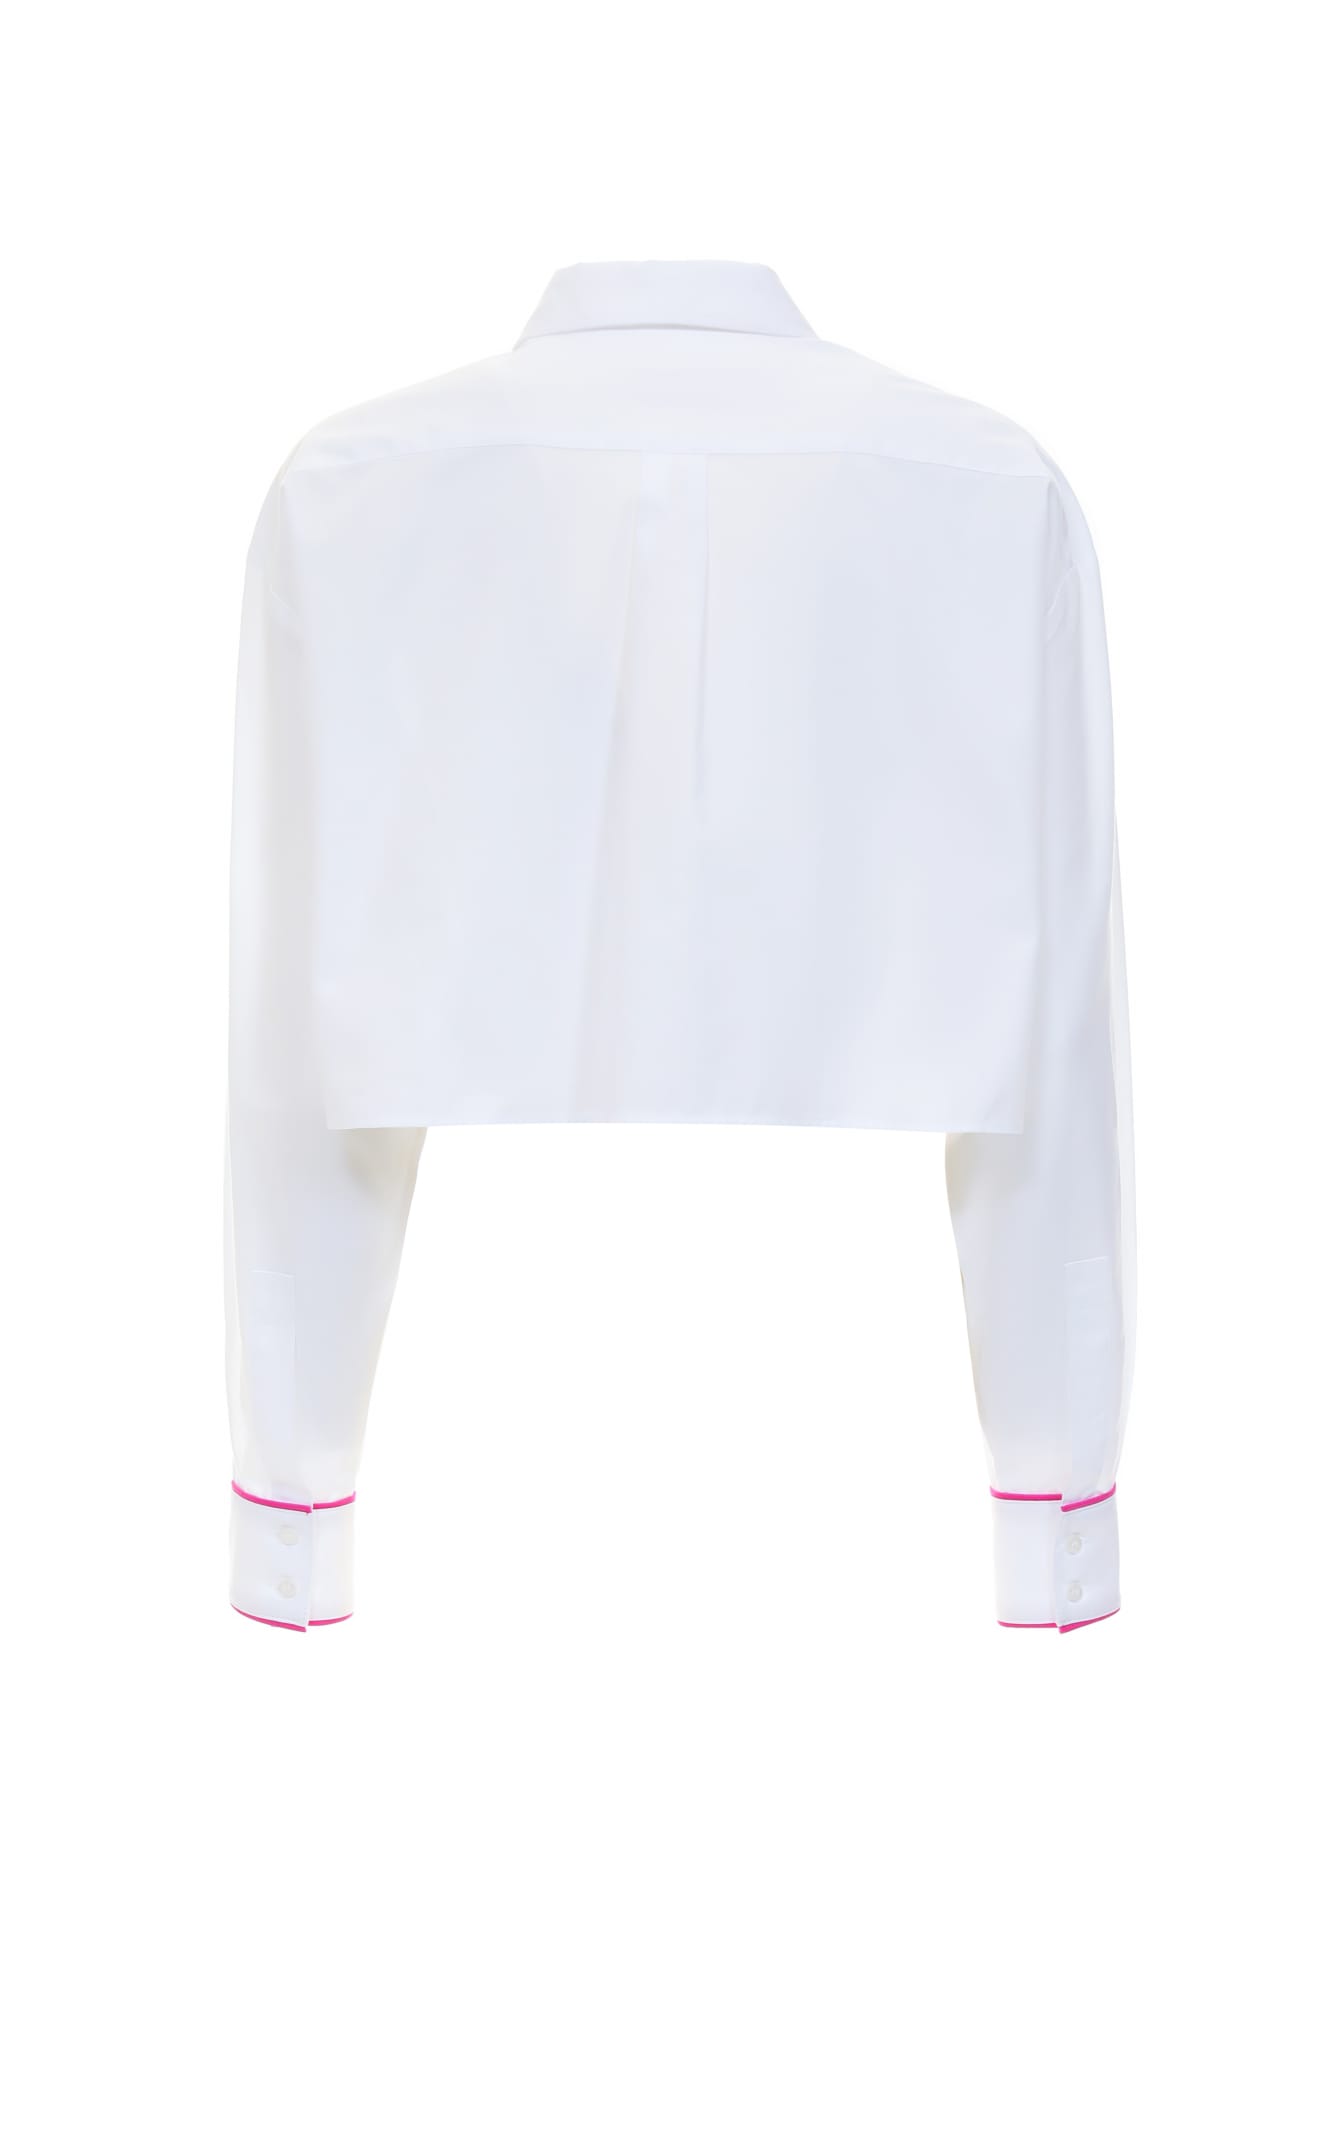 Shop Chiara Ferragni Shirts White